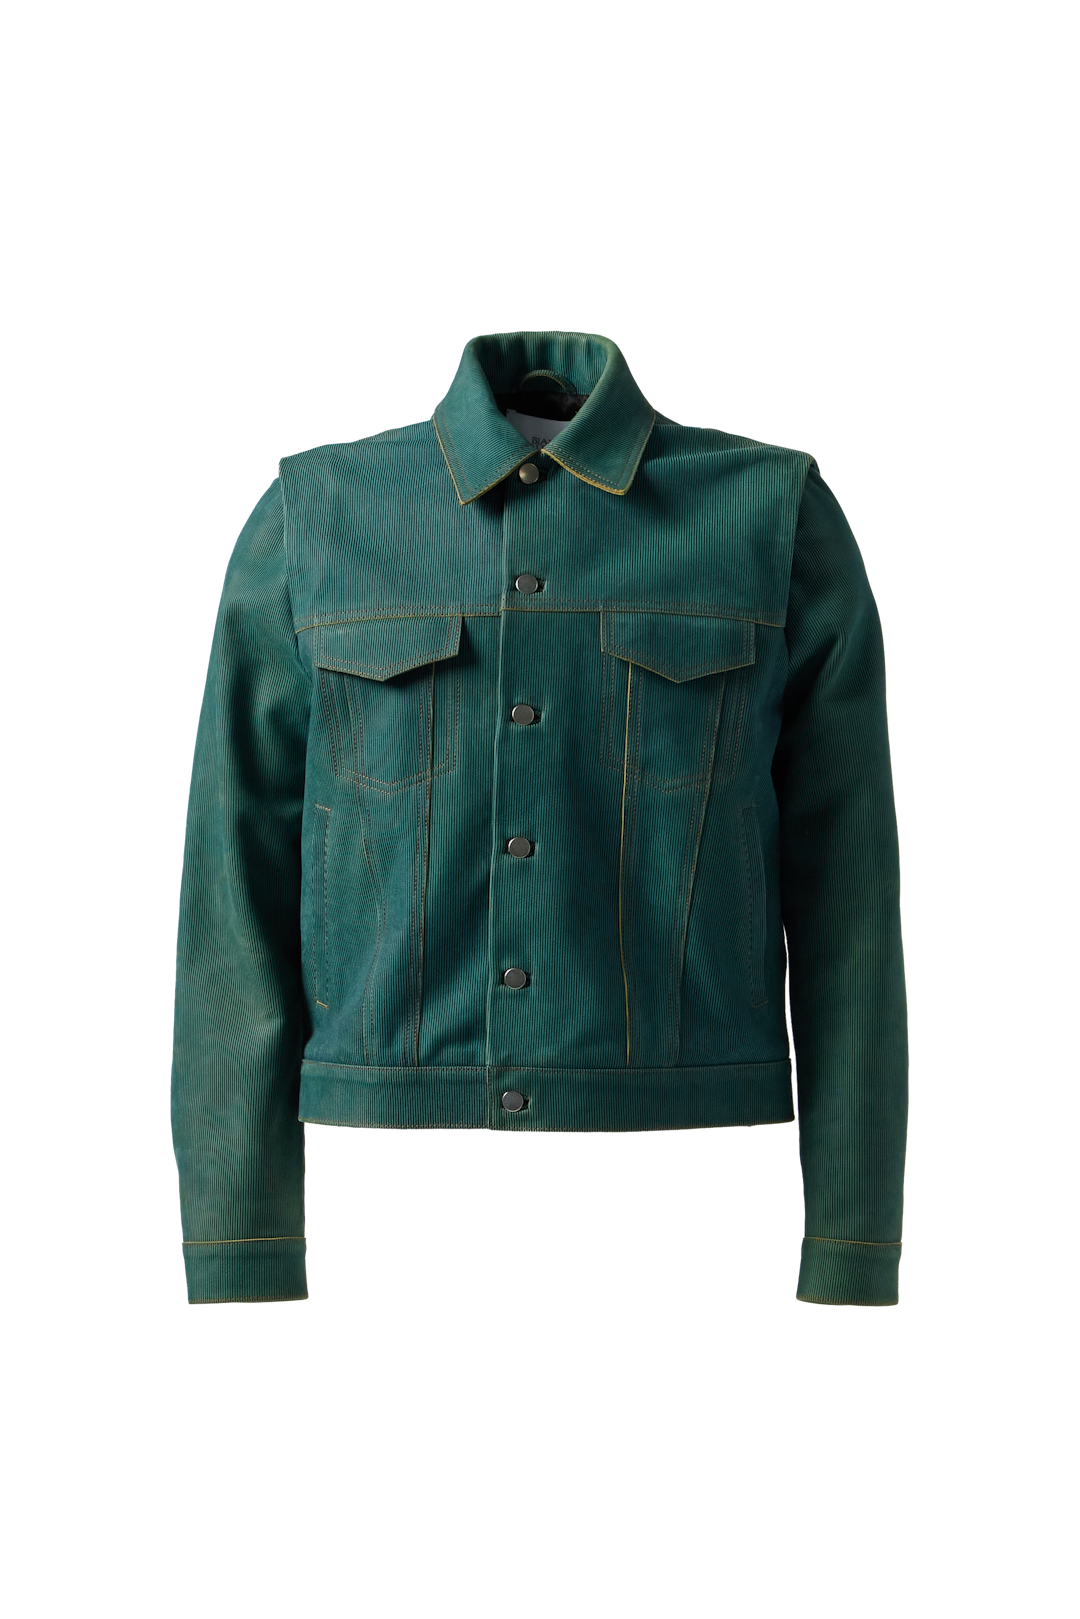 BIANCA SAUNDERS - Larda Leather Jacket product image